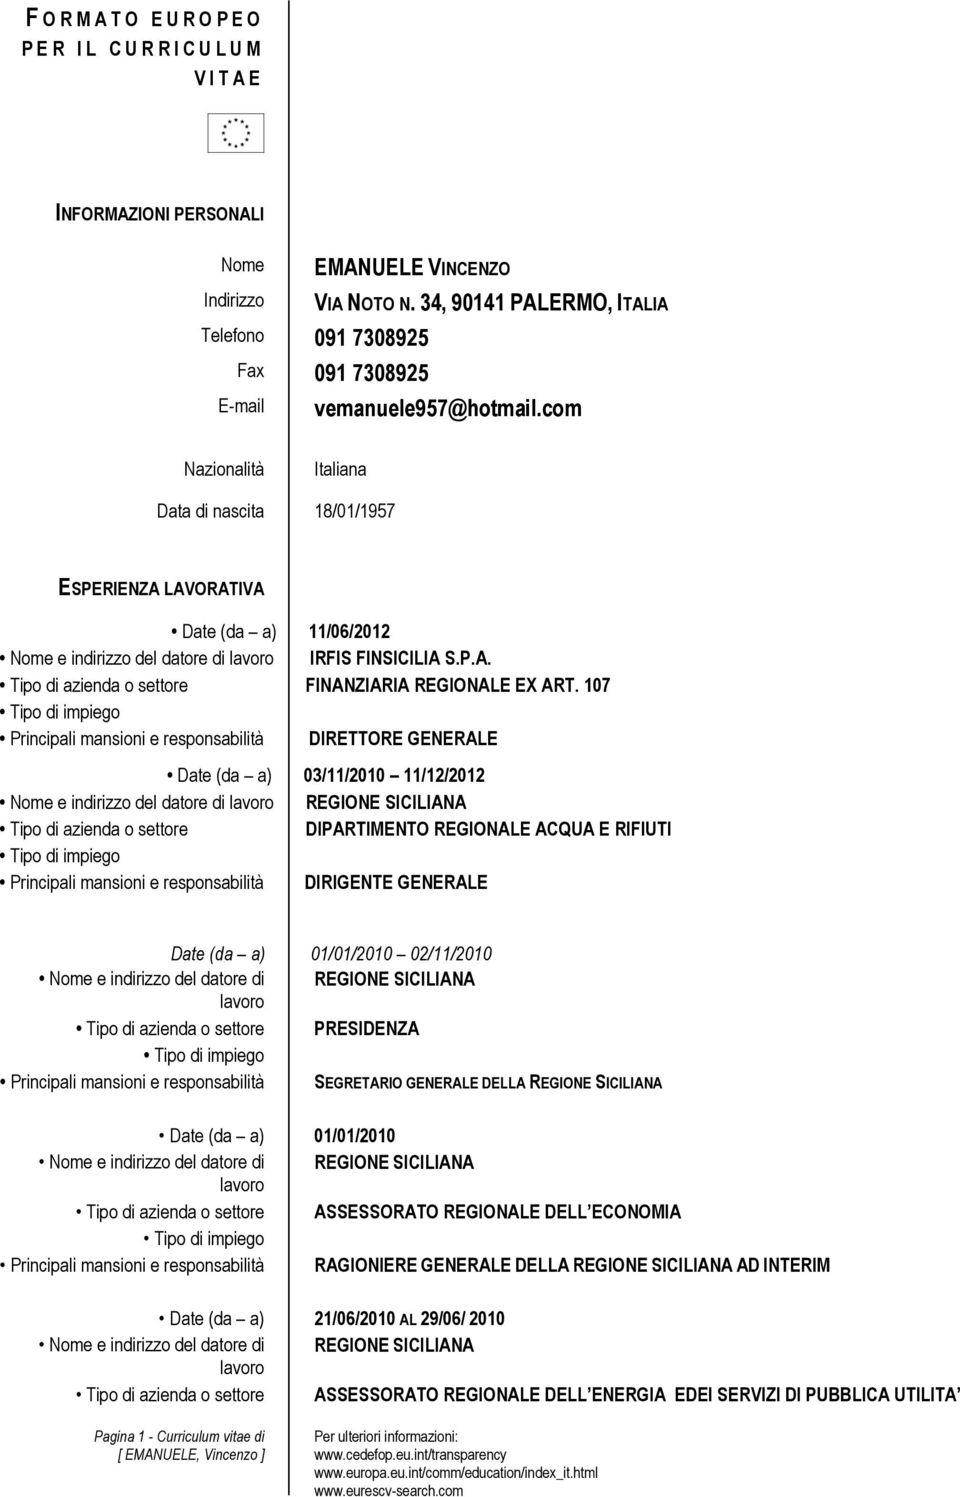 107 Principali mansioni e responsabilità DIRETTORE GENERALE Date (da a) 03/11/2010 11/12/2012 Nome e indirizzo del datore di REGIONE SICILIANA Tipo di azienda o settore DIPARTIMENTO REGIONALE ACQUA E